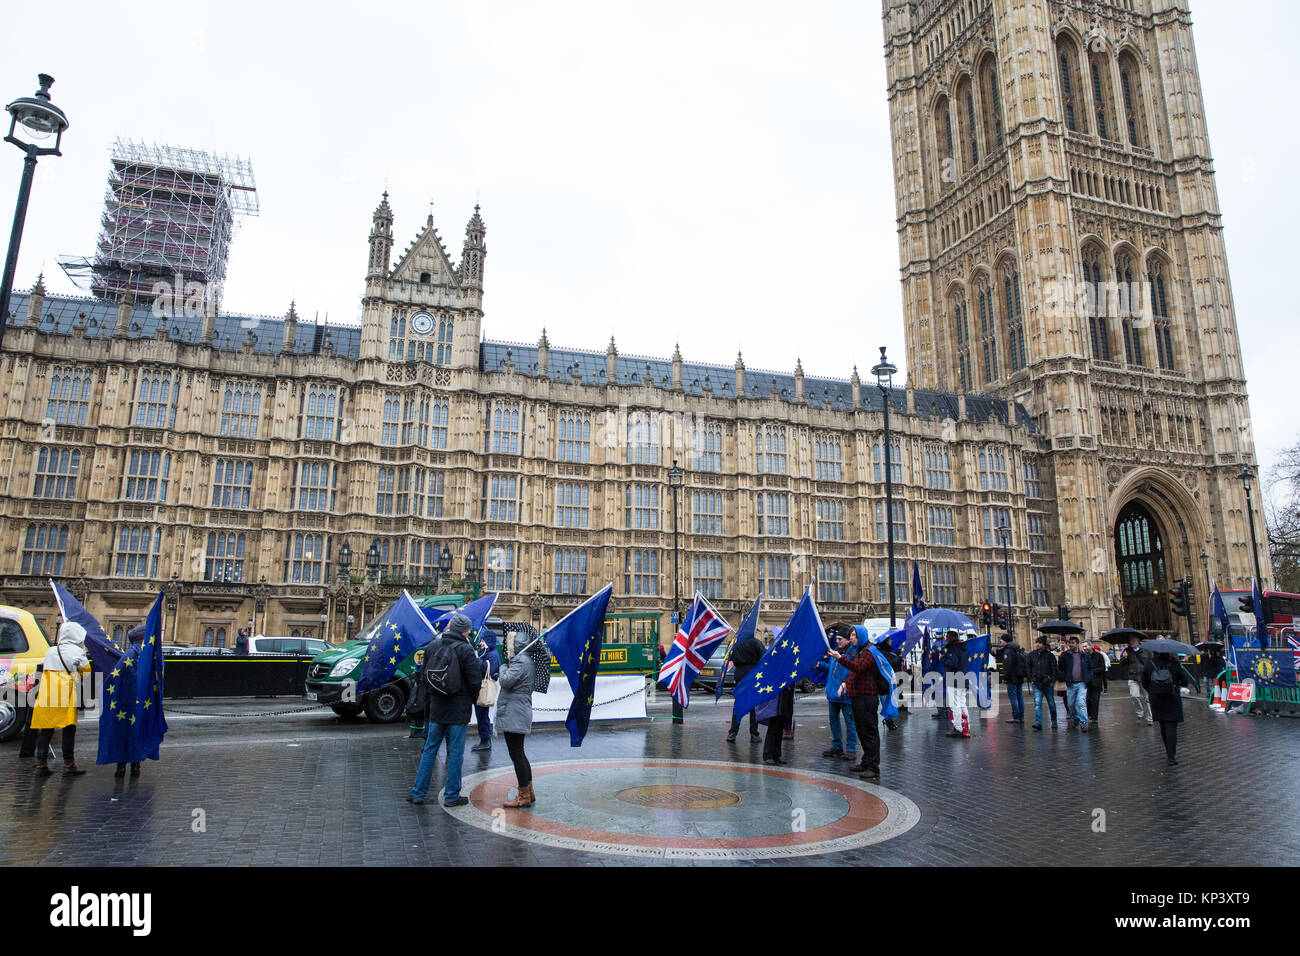 London, Großbritannien. 12. Dezember, 2017. Anti-Brexit Demonstranten wave Europäische Union Flaggen und Union Jacks außerhalb des Parlaments. Credit: Mark Kerrison/Alamy leben Nachrichten Stockfoto